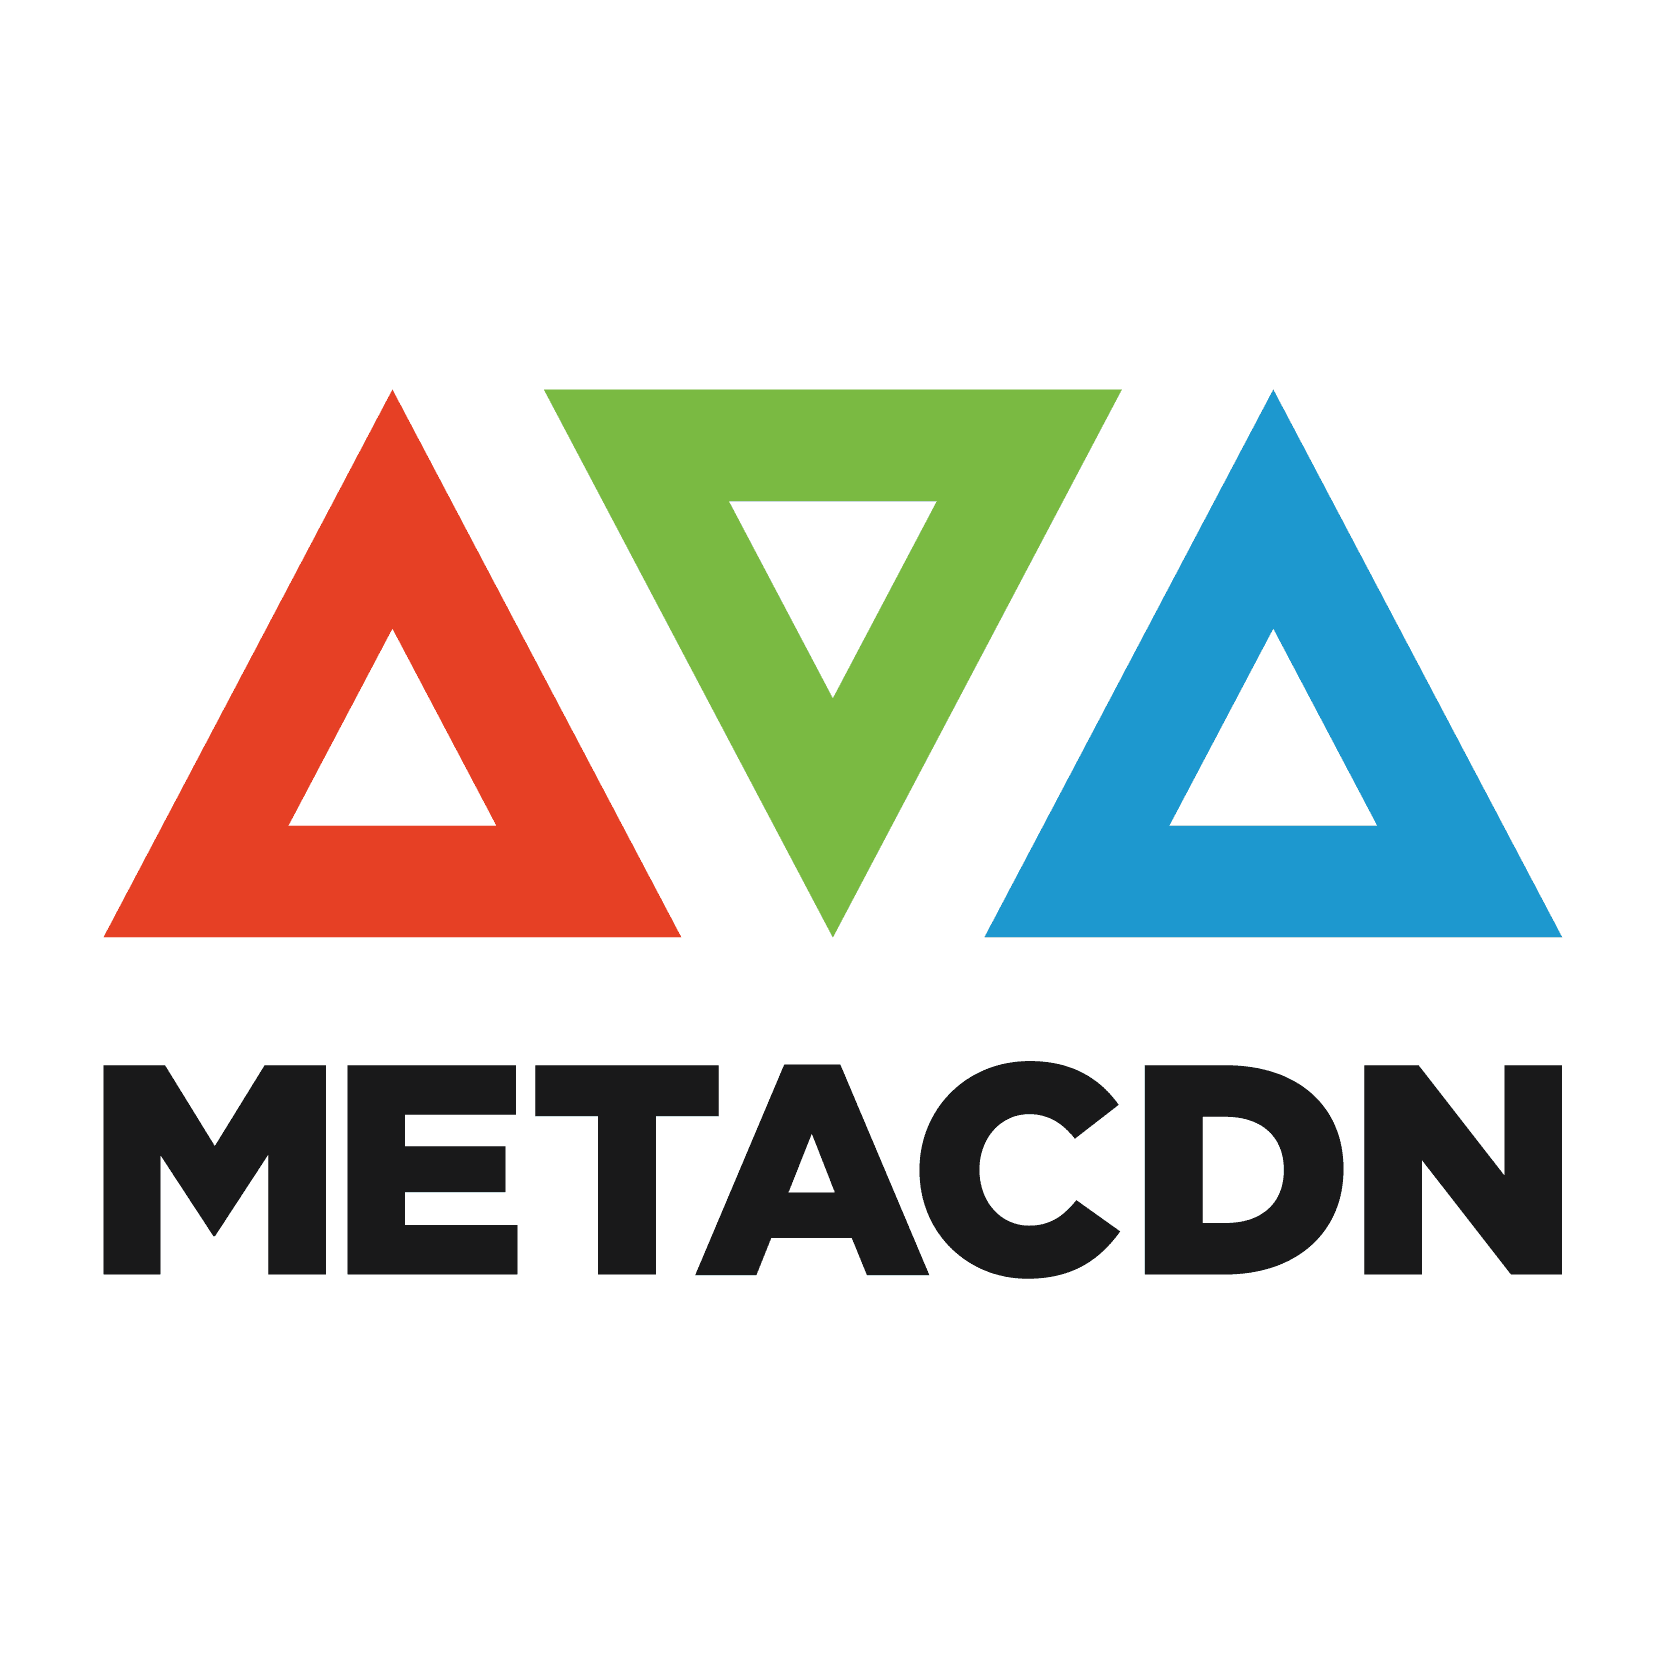 MetaCDN